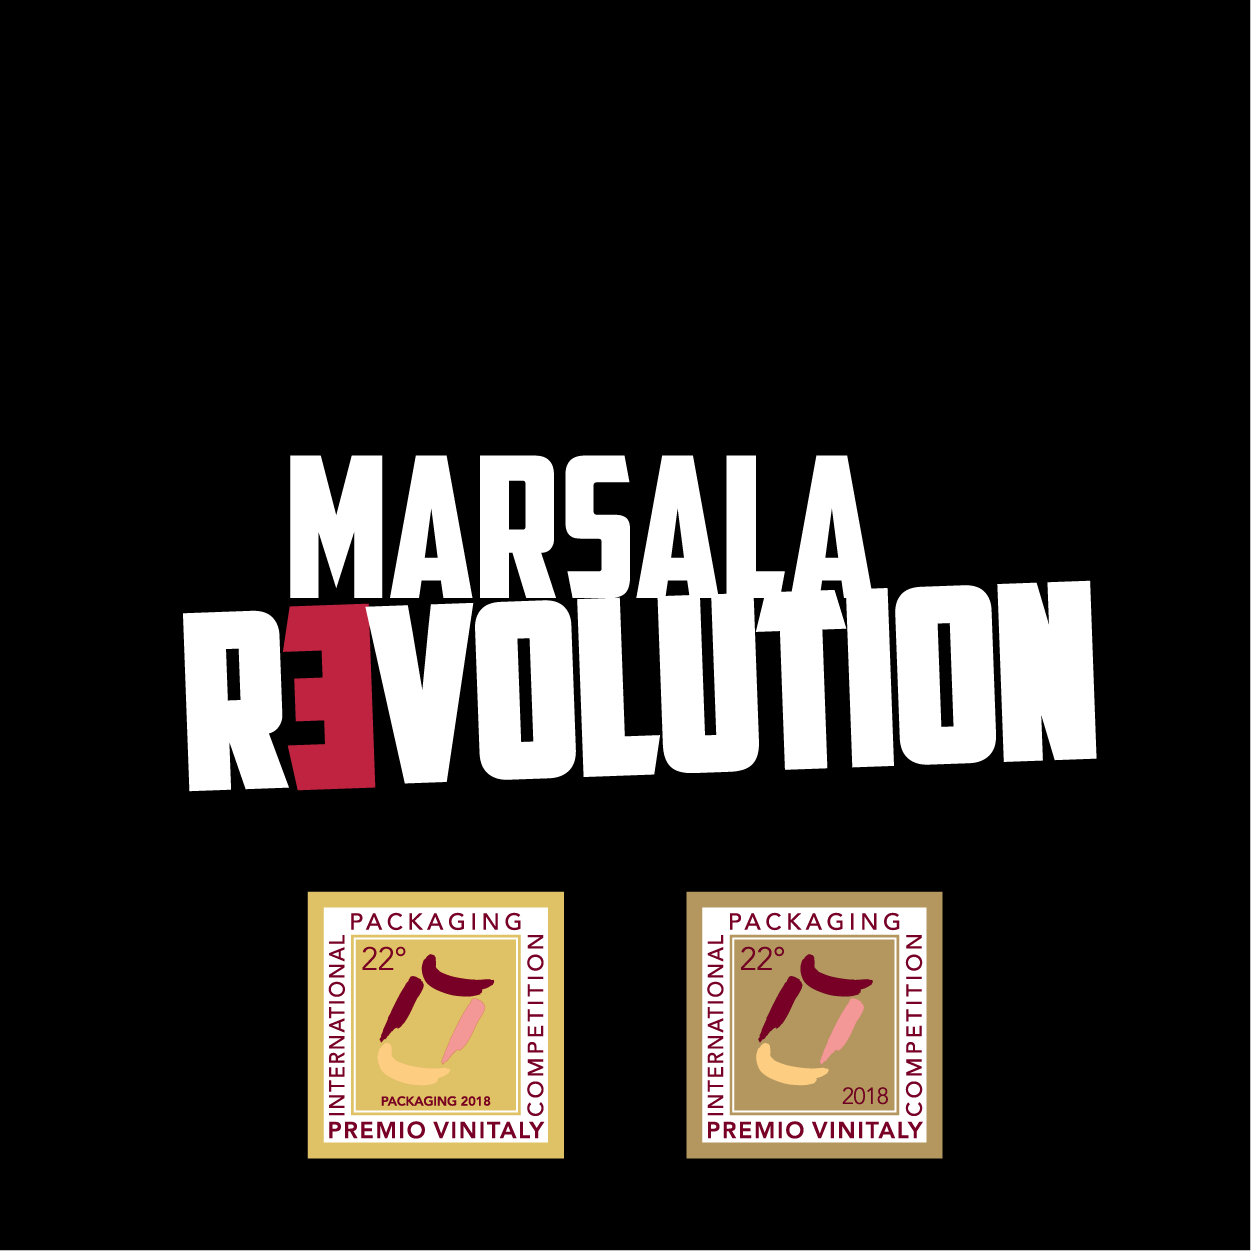 Marsala Revolution - Logo